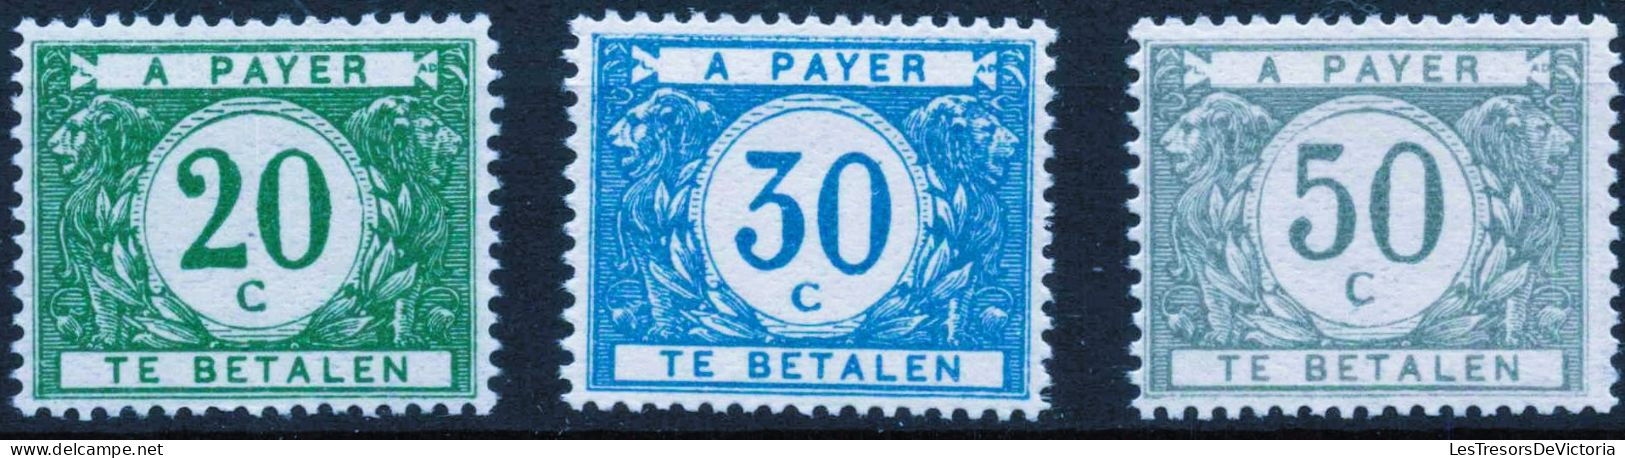 Timbres - Belgique - 1916 - Timbres Taxe - COB TX 12/16* - Cote 515 - Sellos